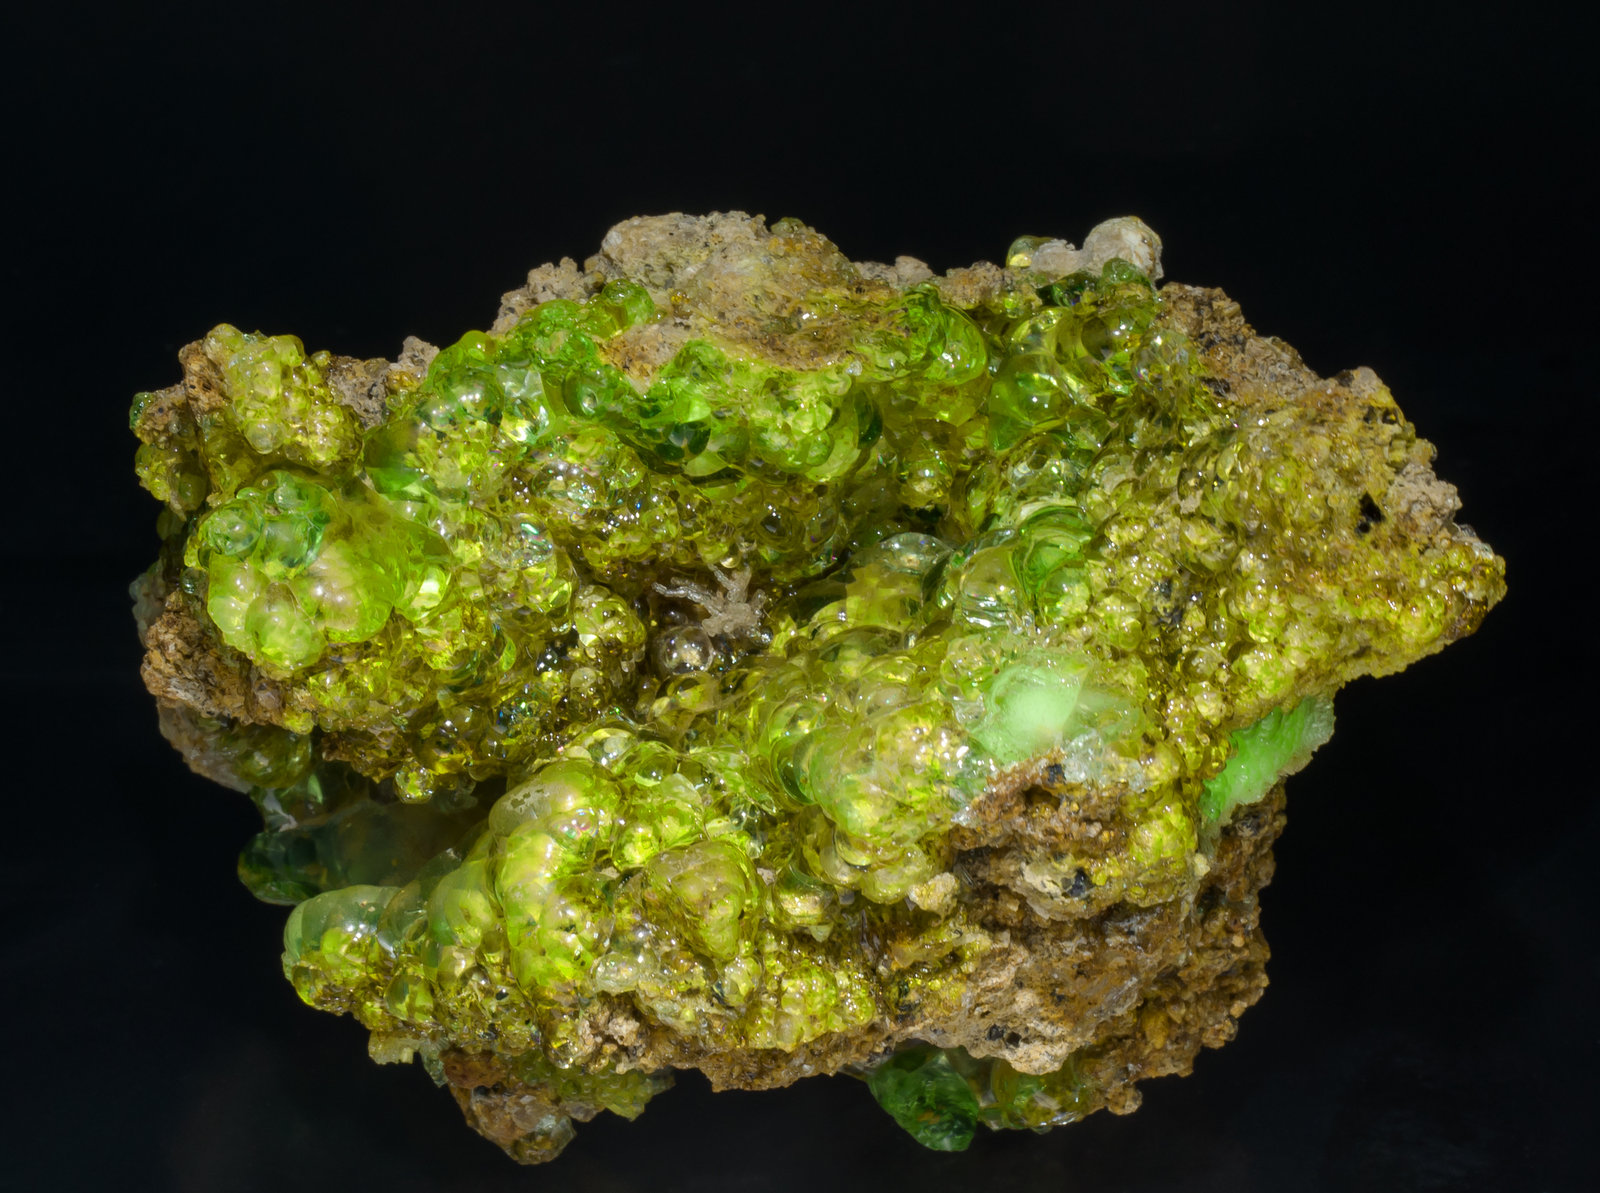 specimens/s_imagesAA5/Opal_hyalite-TE26AA5f2.jpg